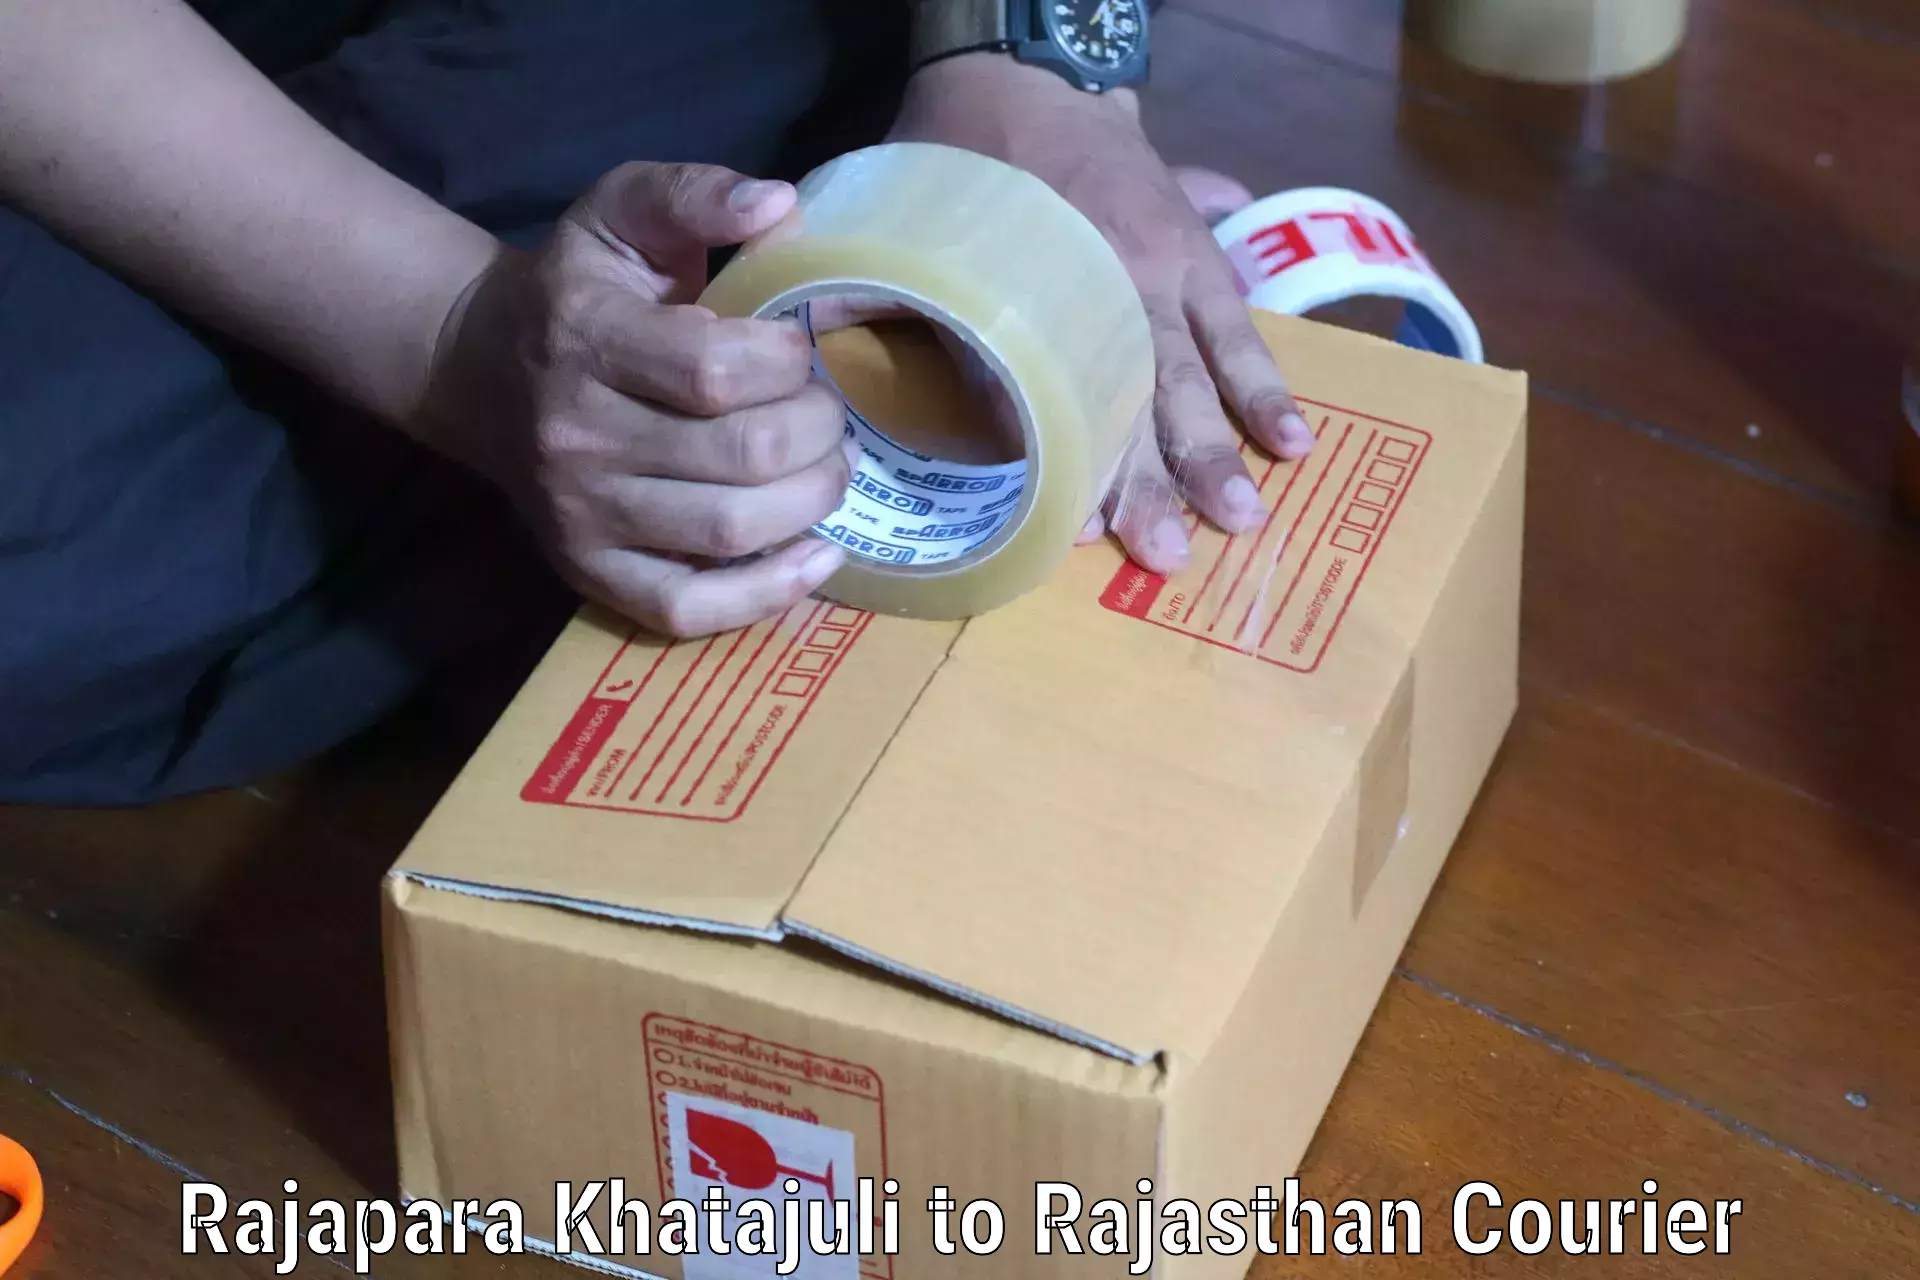 High-speed parcel service Rajapara Khatajuli to Chhoti Sadri